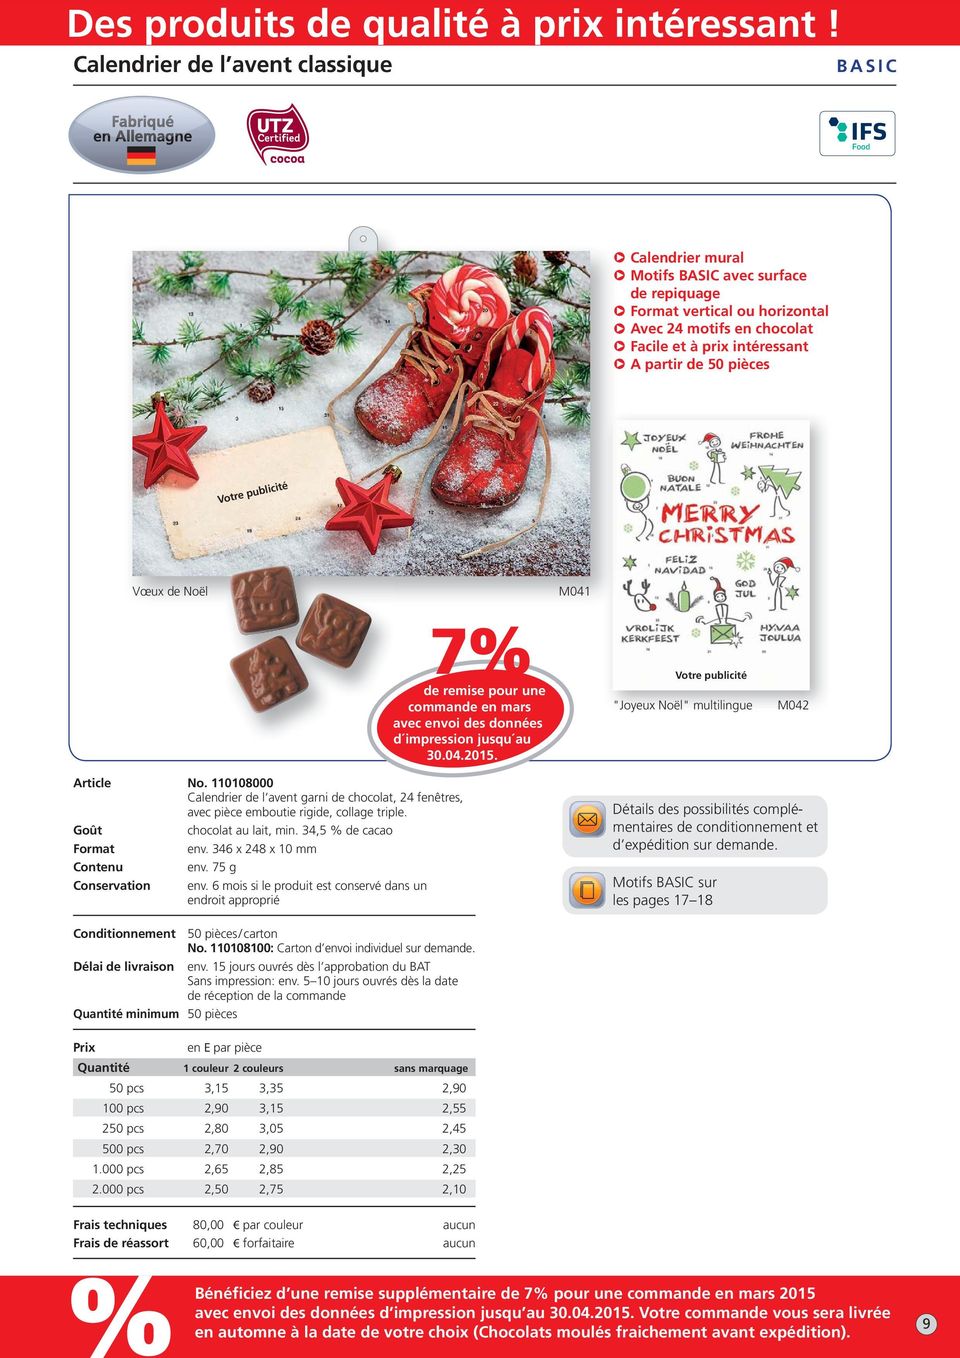 Goût chocolat au lait, min. 34,5 de cacao Format env. 346 x 248 x 10 mm Contenu env. 75 g Conservation env.